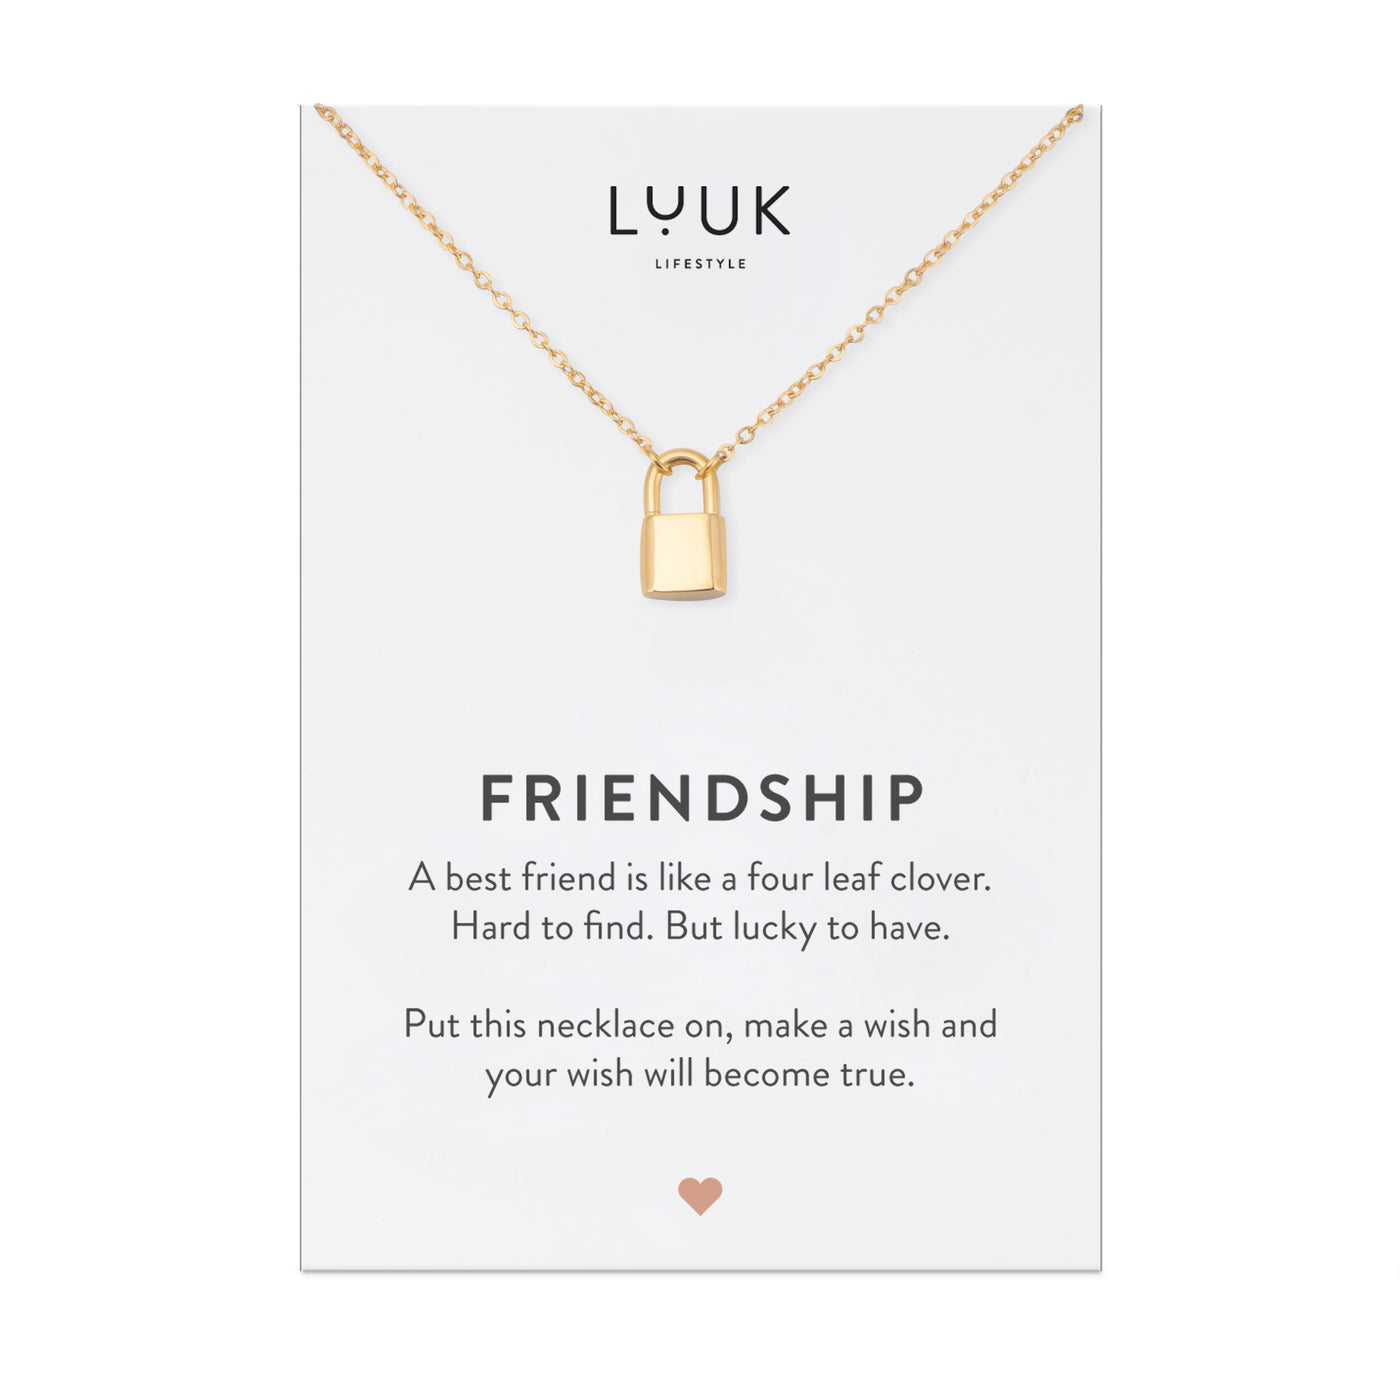 Goldene Halskette mit Vorhängeschloss Anhänger auf Friendship Karte von der Brand Luuk Lifestyle